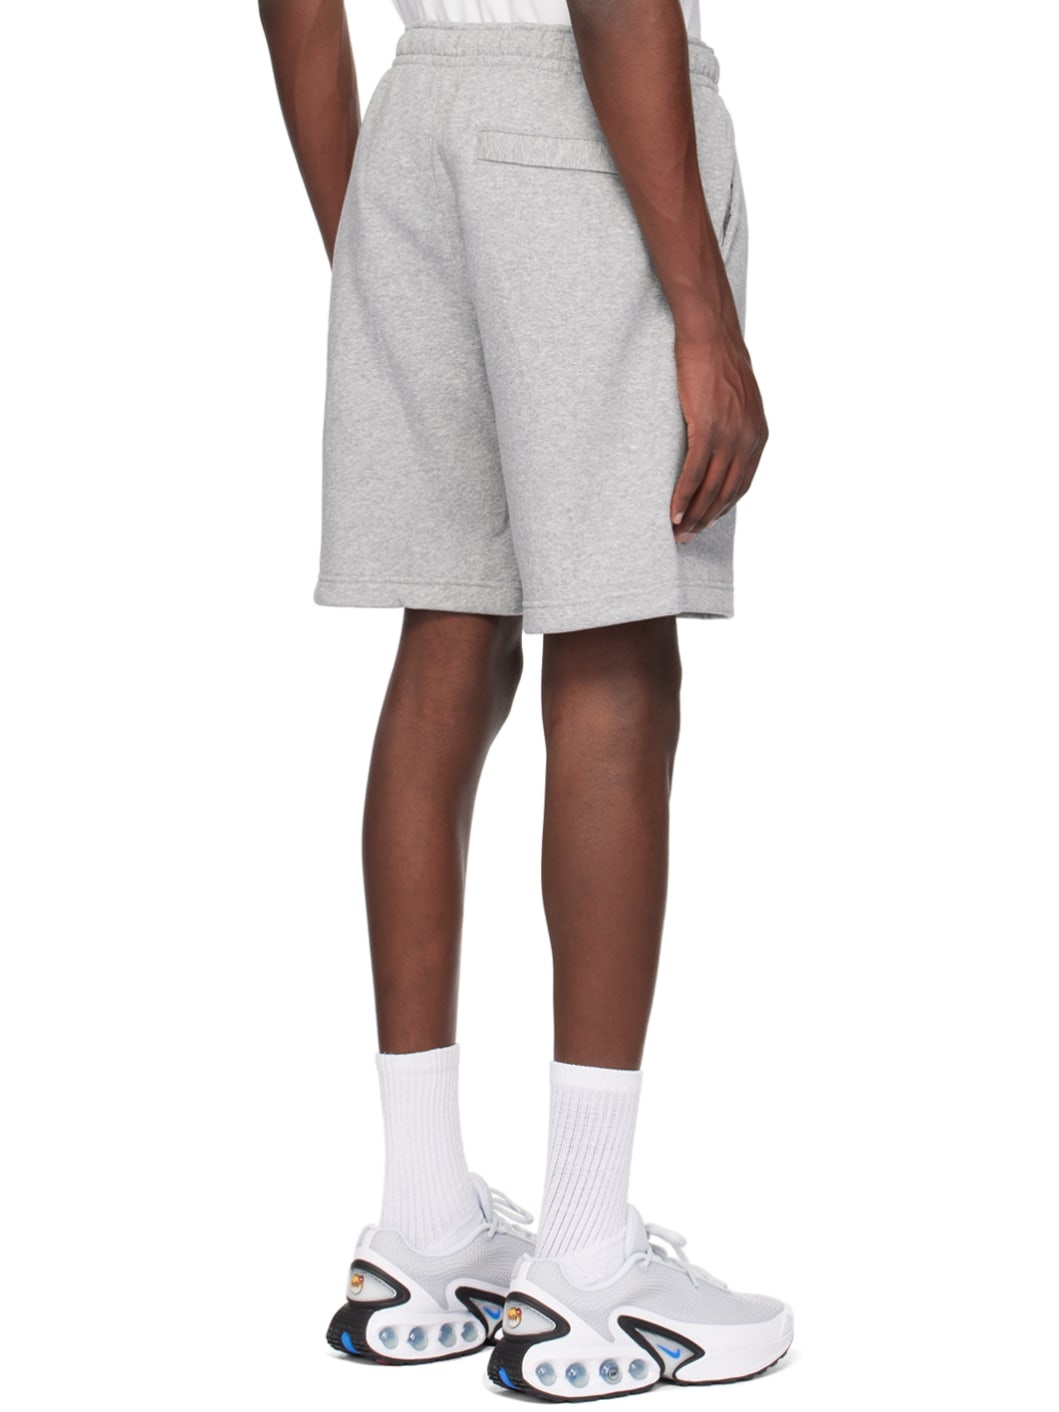 Gray Printed Shorts - 3